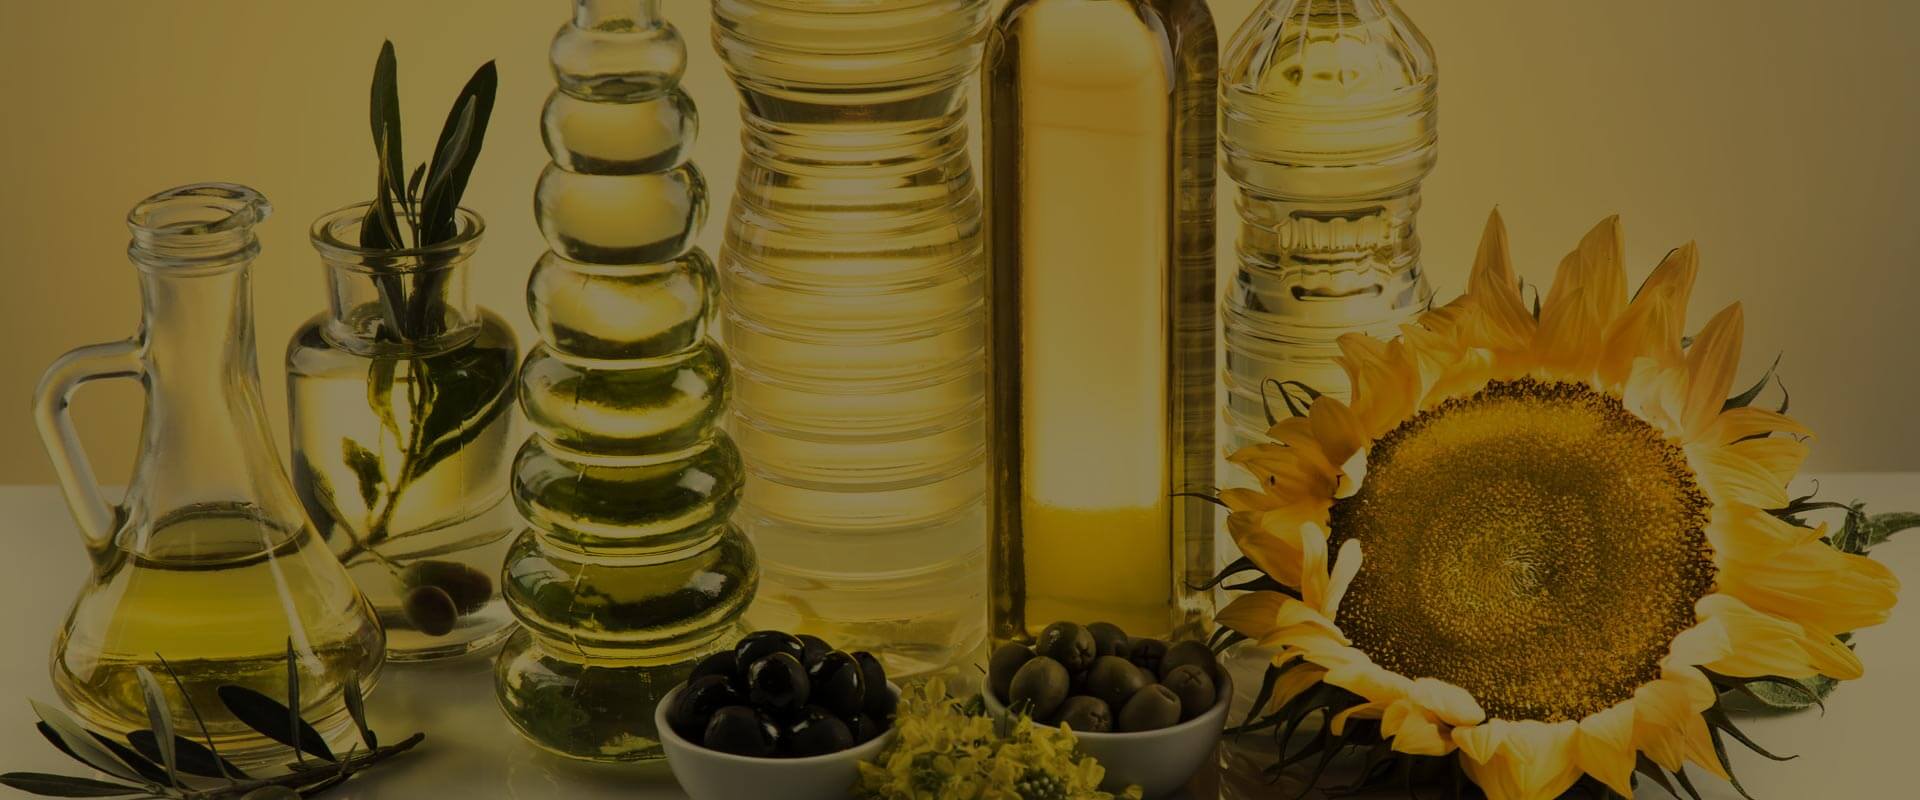 Харчові технології 5. Технології рослинних олій, жирових та косметичних продуктів